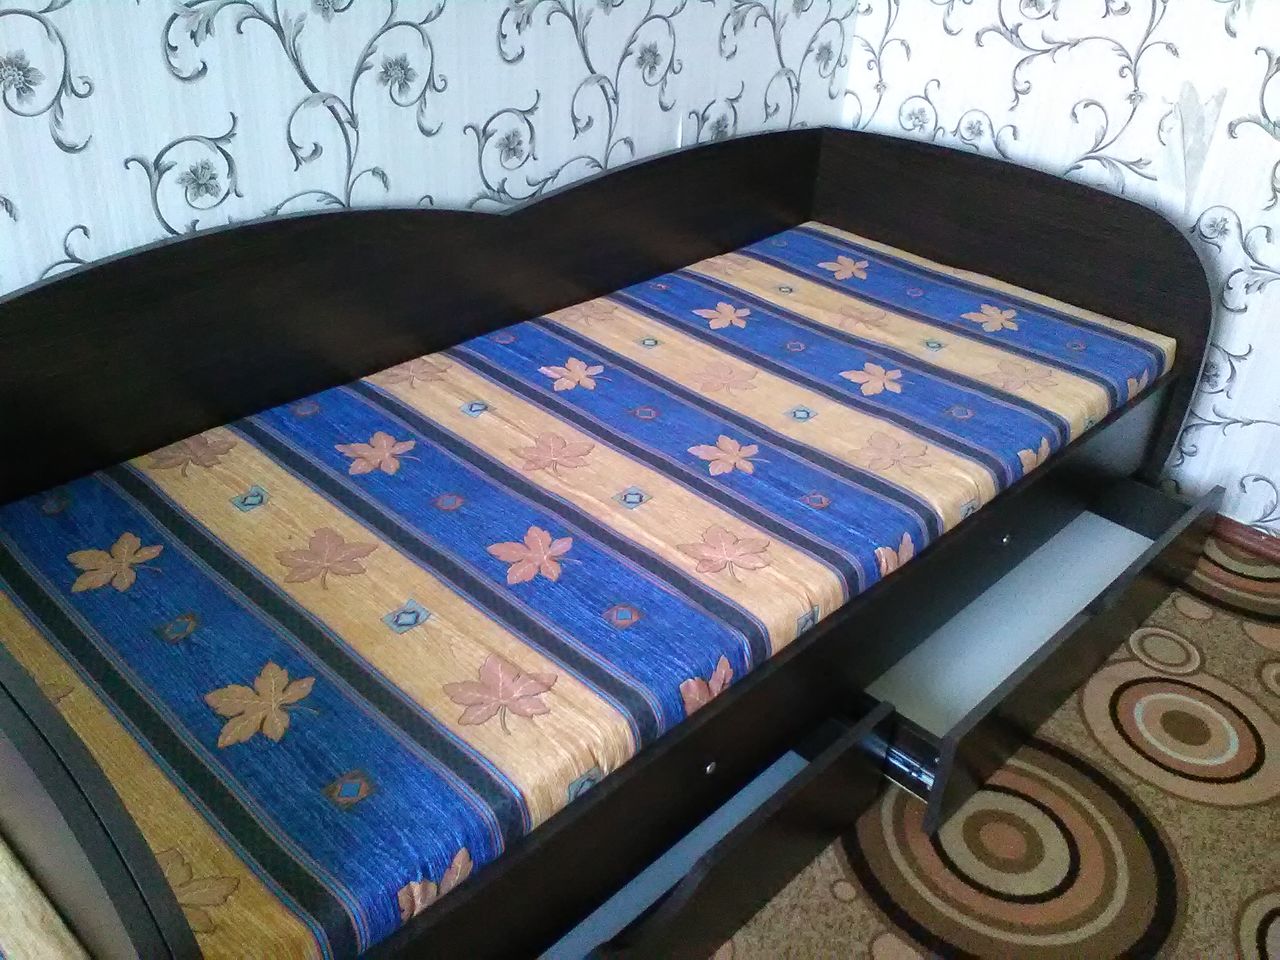 И кровать с обалденными шишками